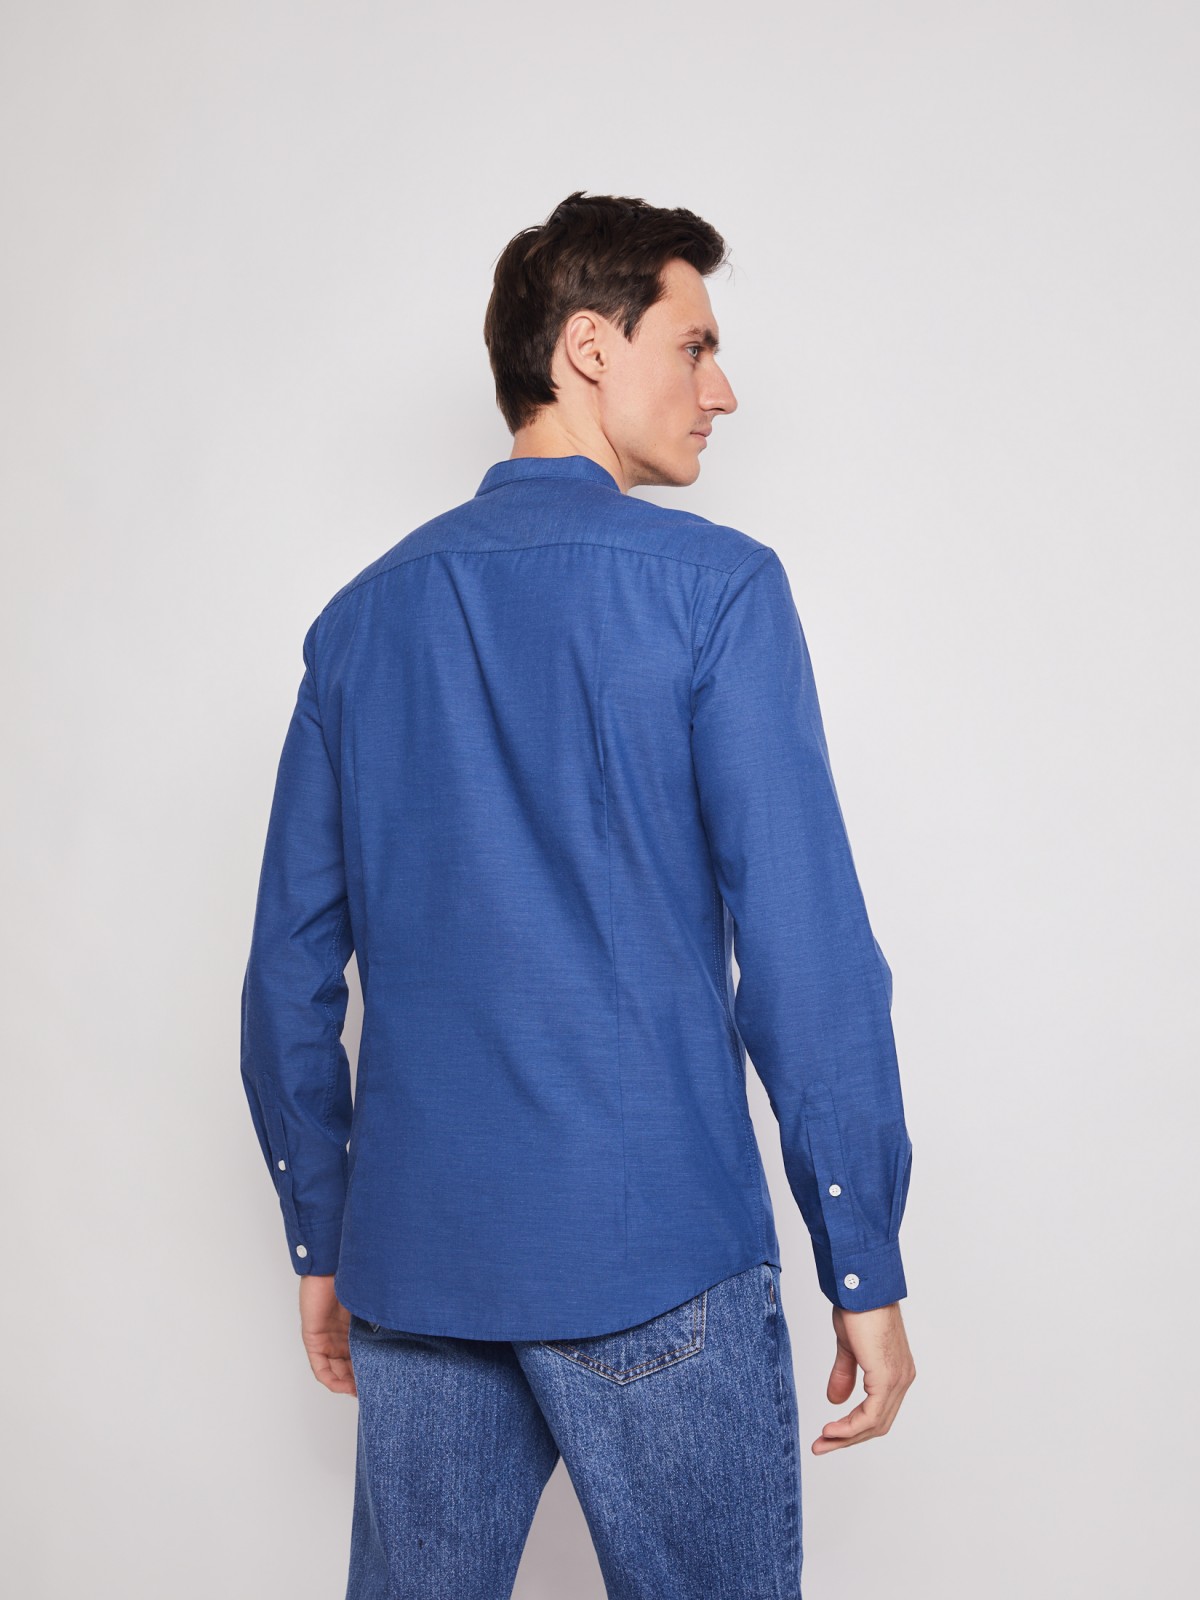 Однотонная рубашка с воротником-стойкой zolla 21211214R052, цвет голубой, размер S - фото 3